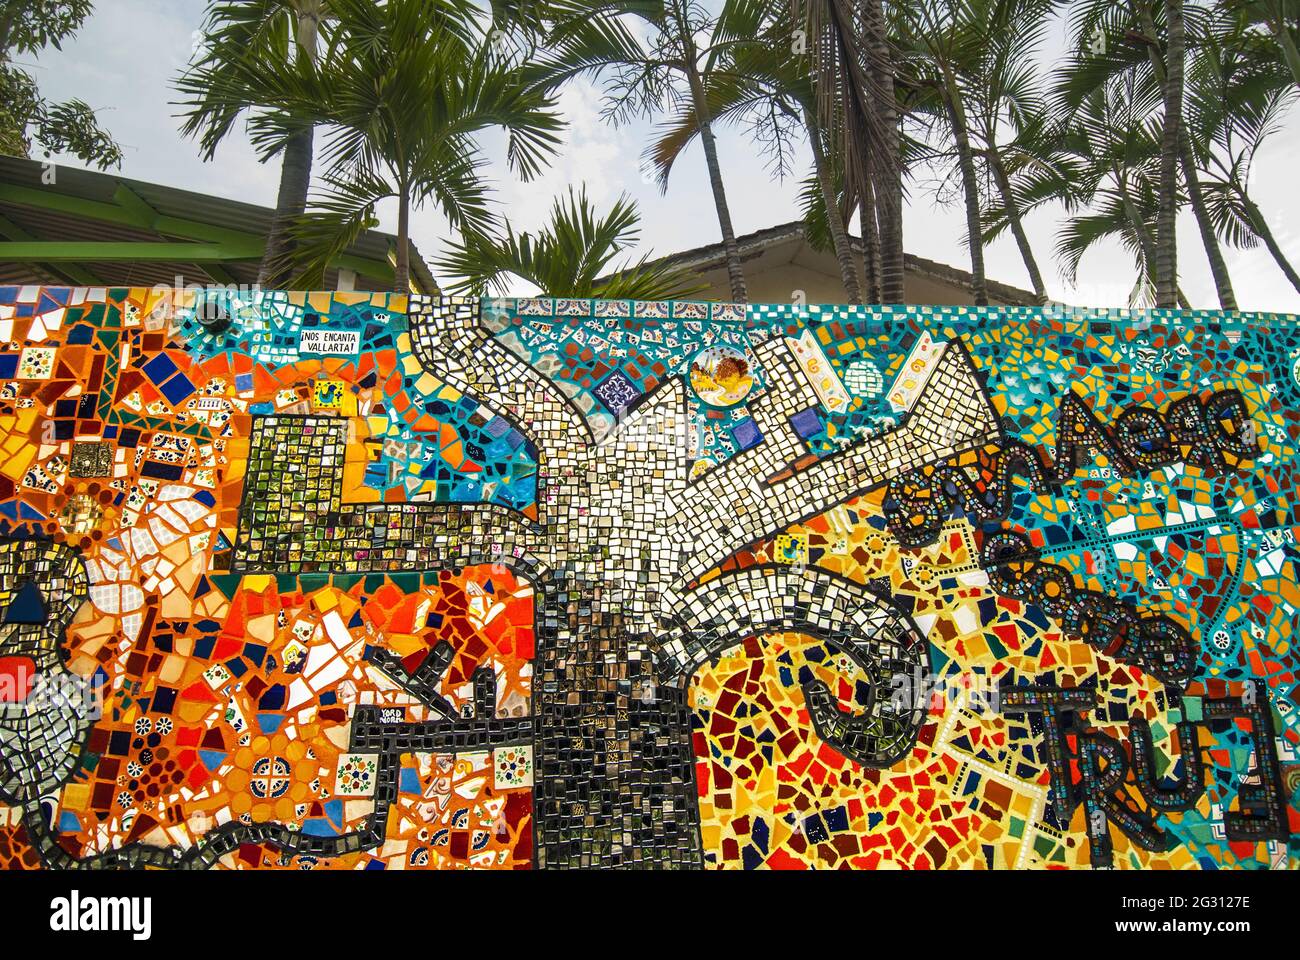 Mozayko Vallarta ist ein Mosaik-Wandprojekt, das an den 44. Jahrestag der Stadt Puerto Vallarta erinnert und von der lokalen Künstlerin Natasha Moraga entworfen wurde. Stockfoto